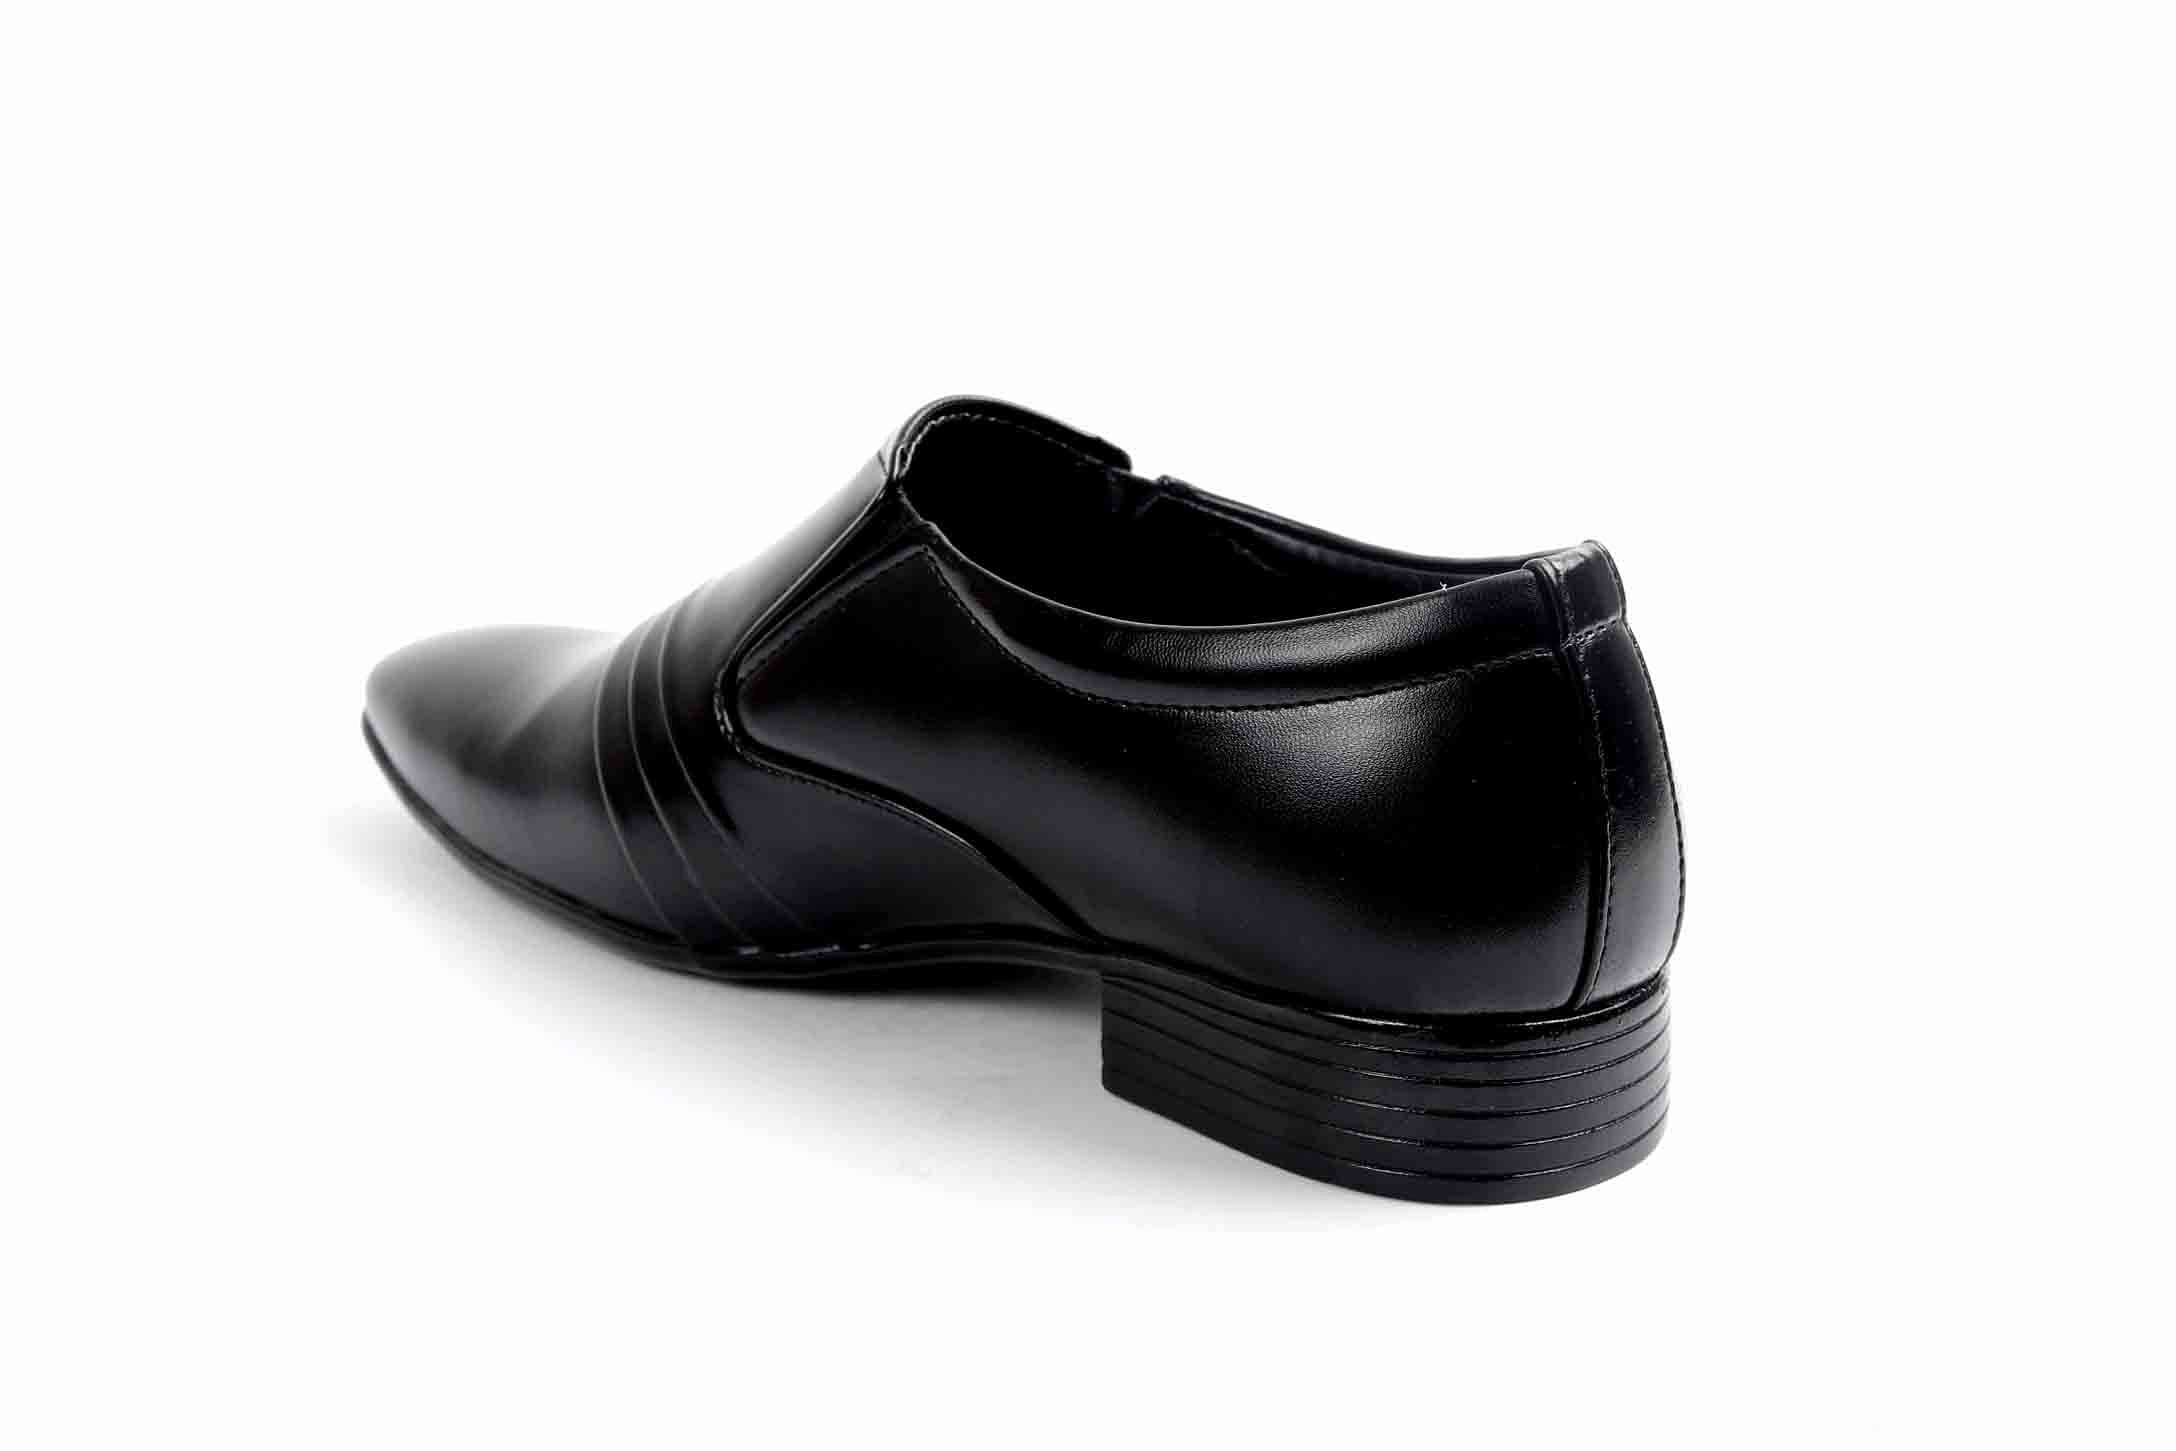 Pair-it Men moccasin Formal Shoes - Black- LZ-RYDER105